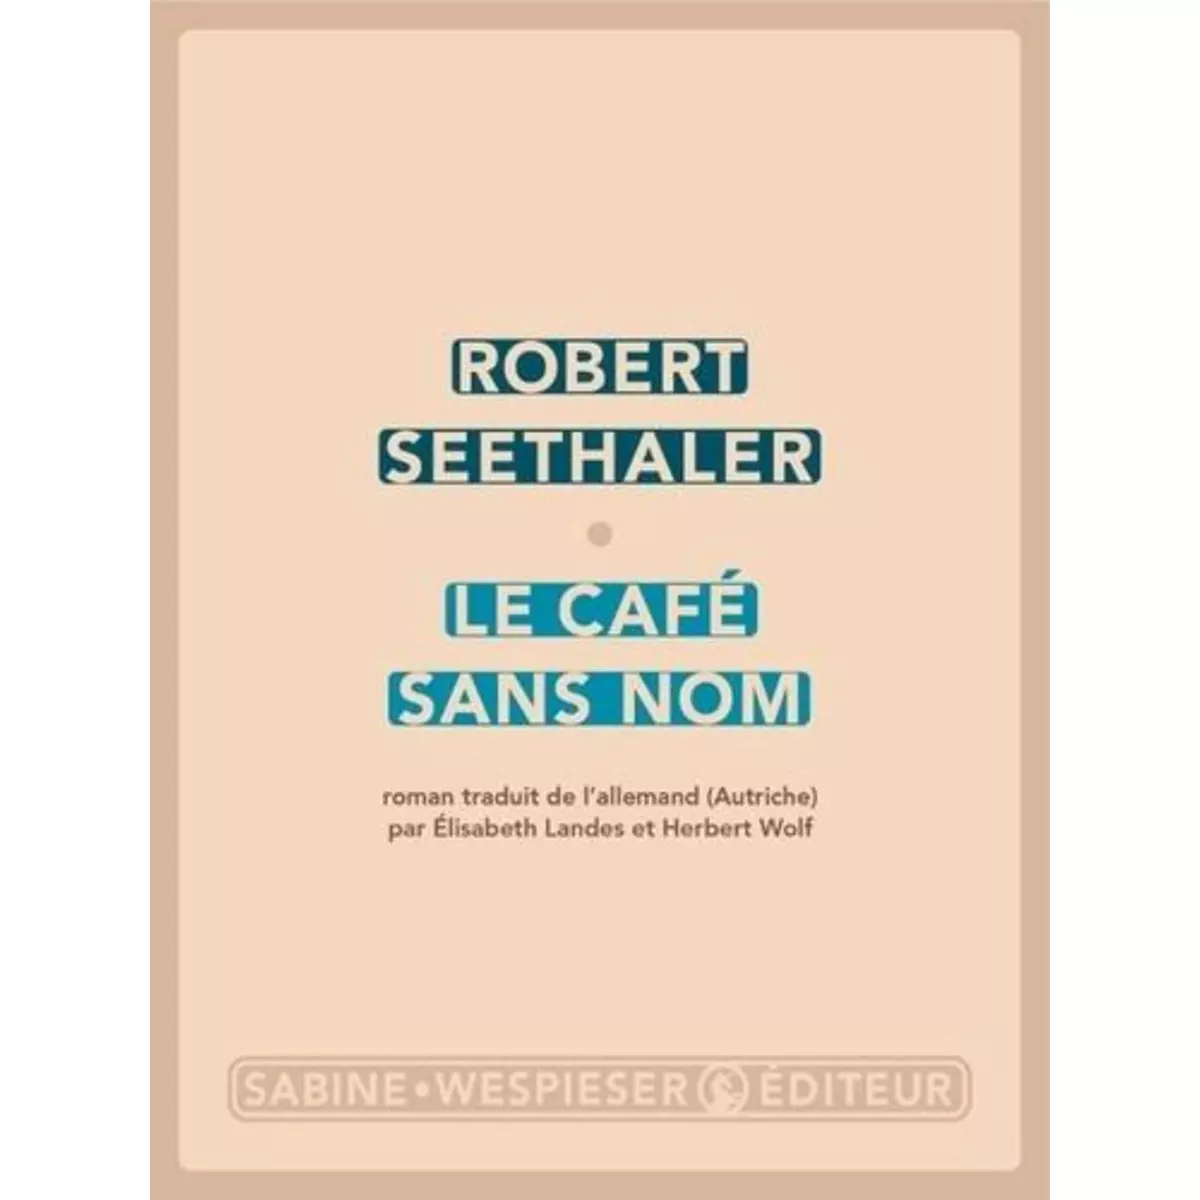  LE CAFE SANS NOM, Seethaler Robert